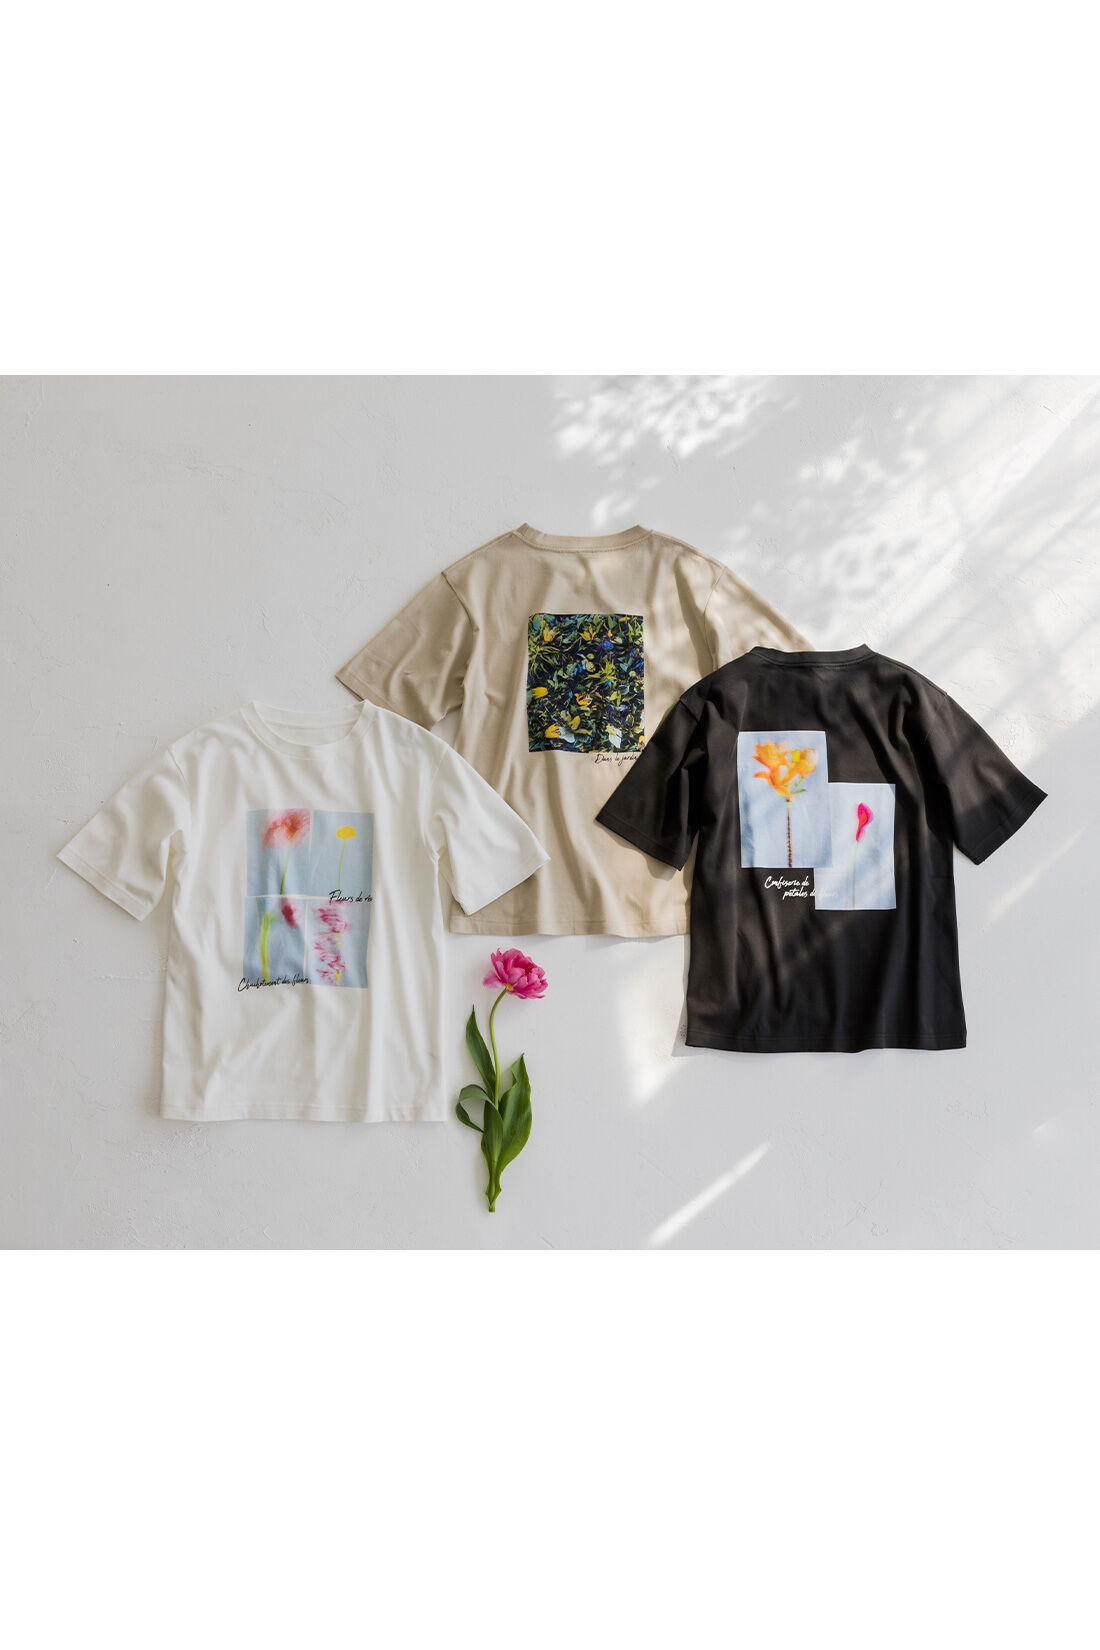 Real Stock|リブ イン コンフォート×plantica コットン100％がうれしい 花咲くフォトTシャツ〈ベージュ〉|色とりどりの花のコラージュに、ポエティックなメッセージを添えて。